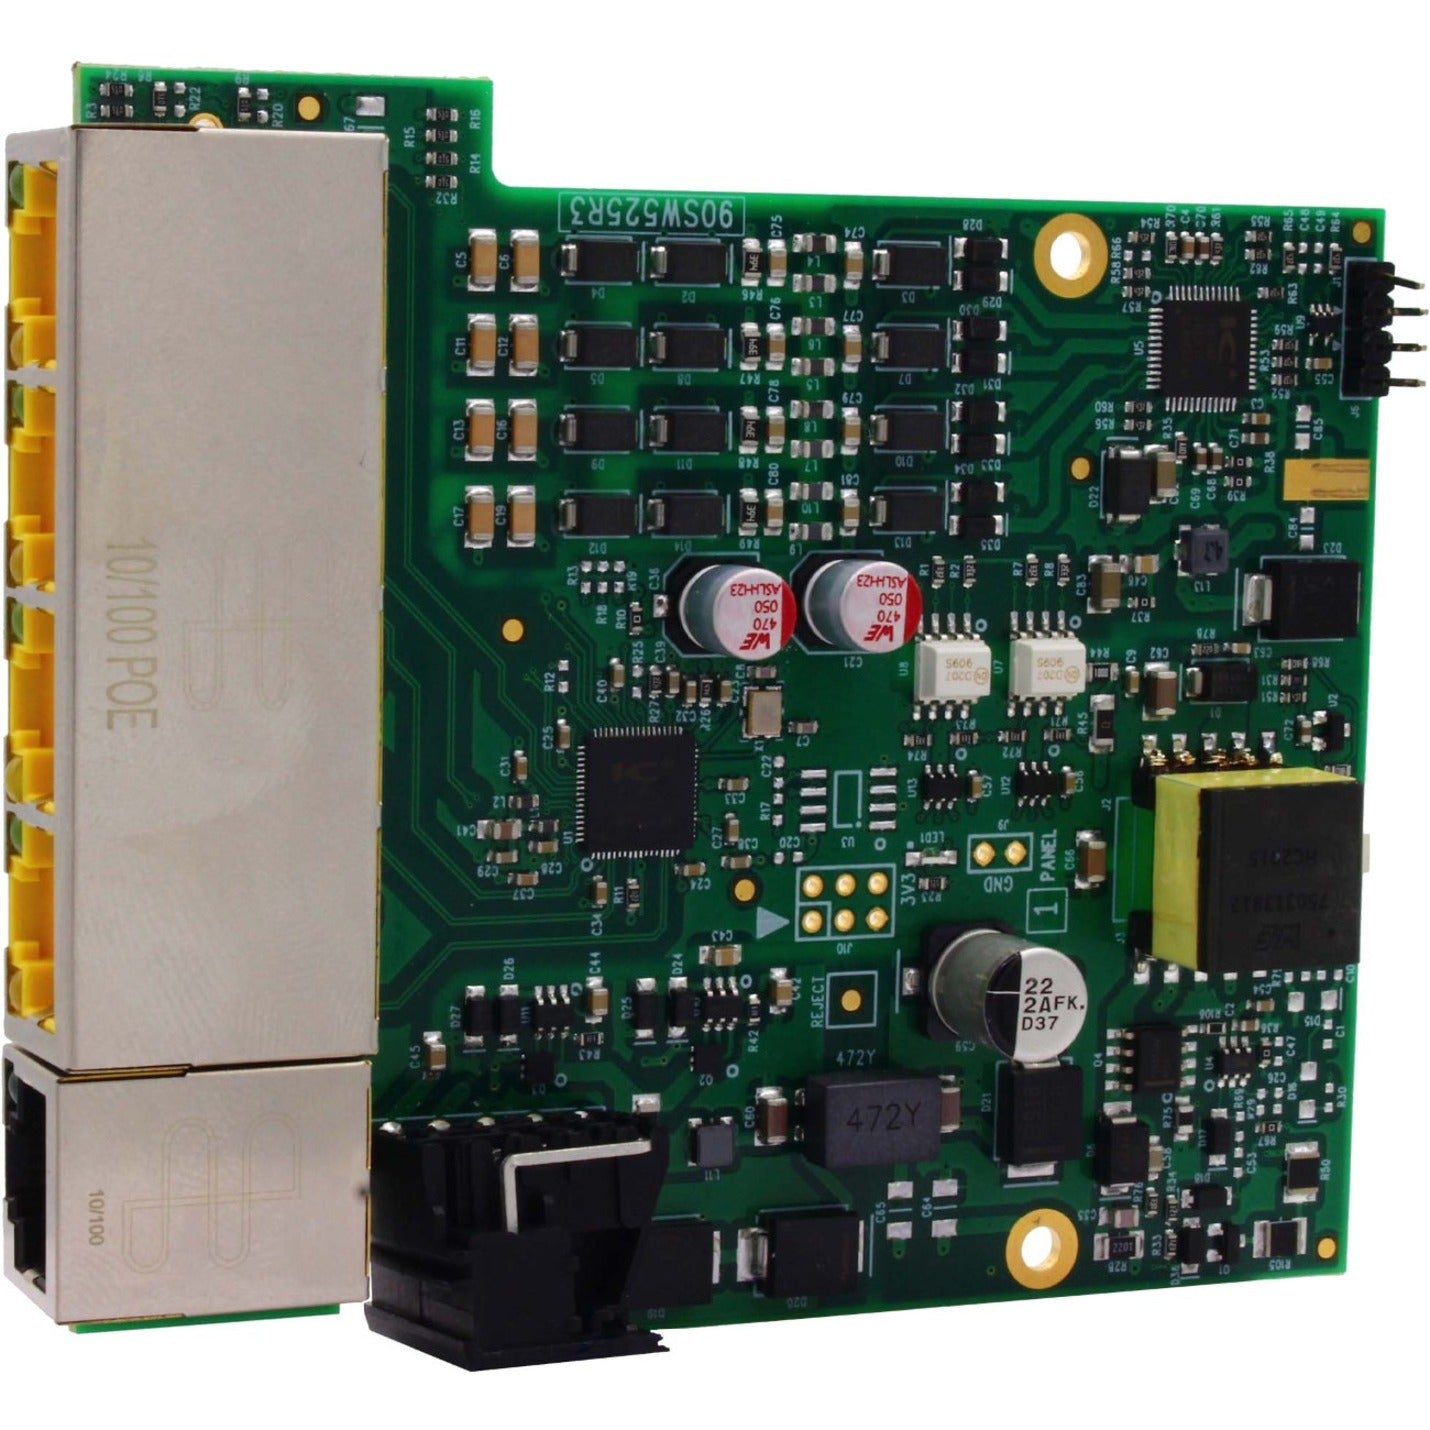 Brainboxes SW-125 Embedded Industrial 5 Port PoE+ 10/100 Ethernet Switch, TAA Compliant, Lifetime Warranty